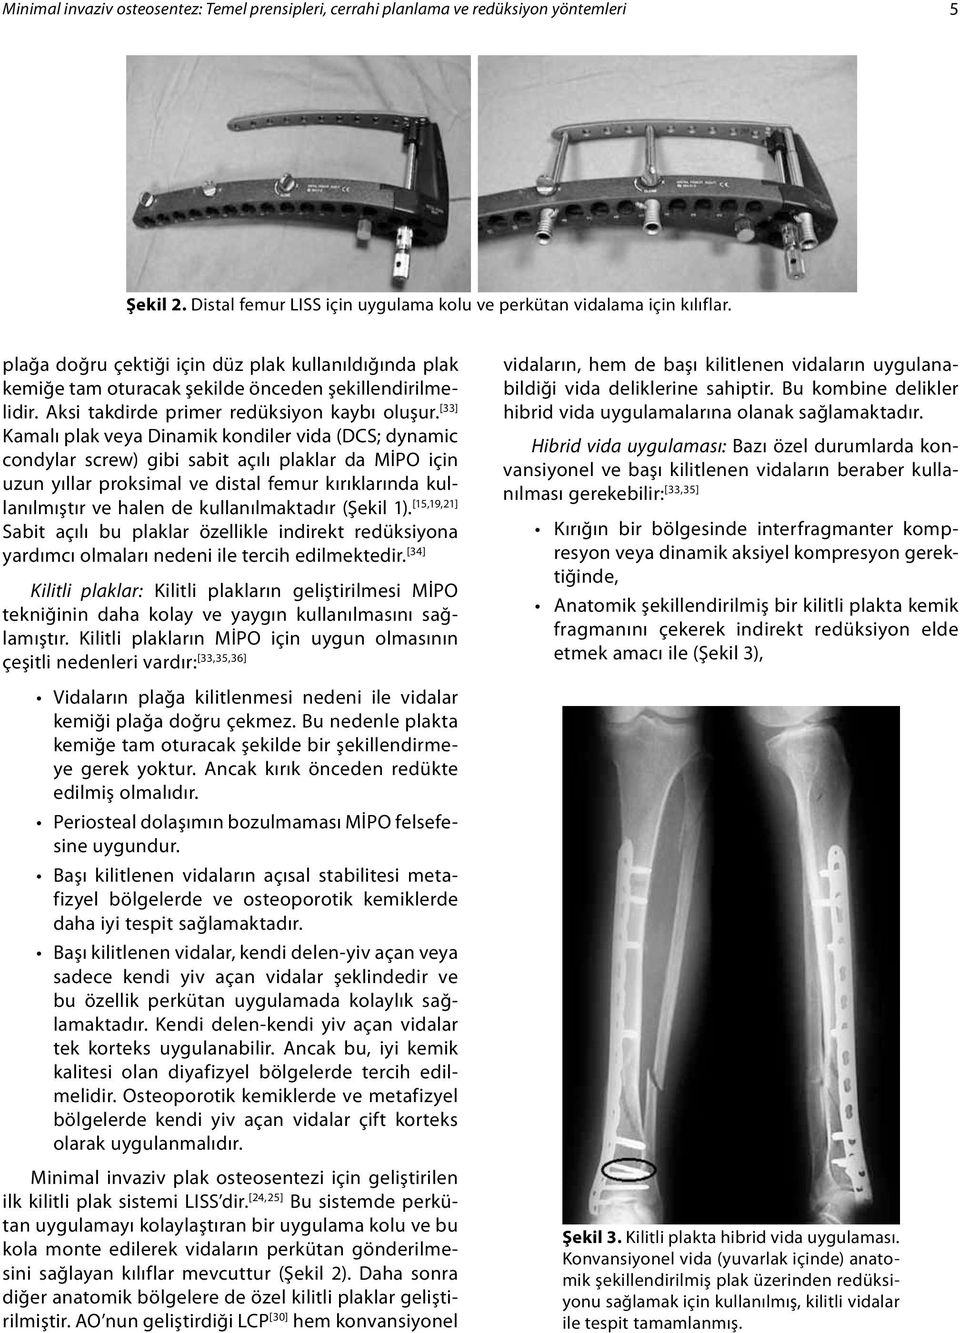 [33] Kamalı plak veya Dinamik kondiler vida (DCS; dynamic condylar screw) gibi sabit açılı plaklar da MİPO için uzun yıllar proksimal ve distal femur kırıklarında kullanılmıştır ve halen de